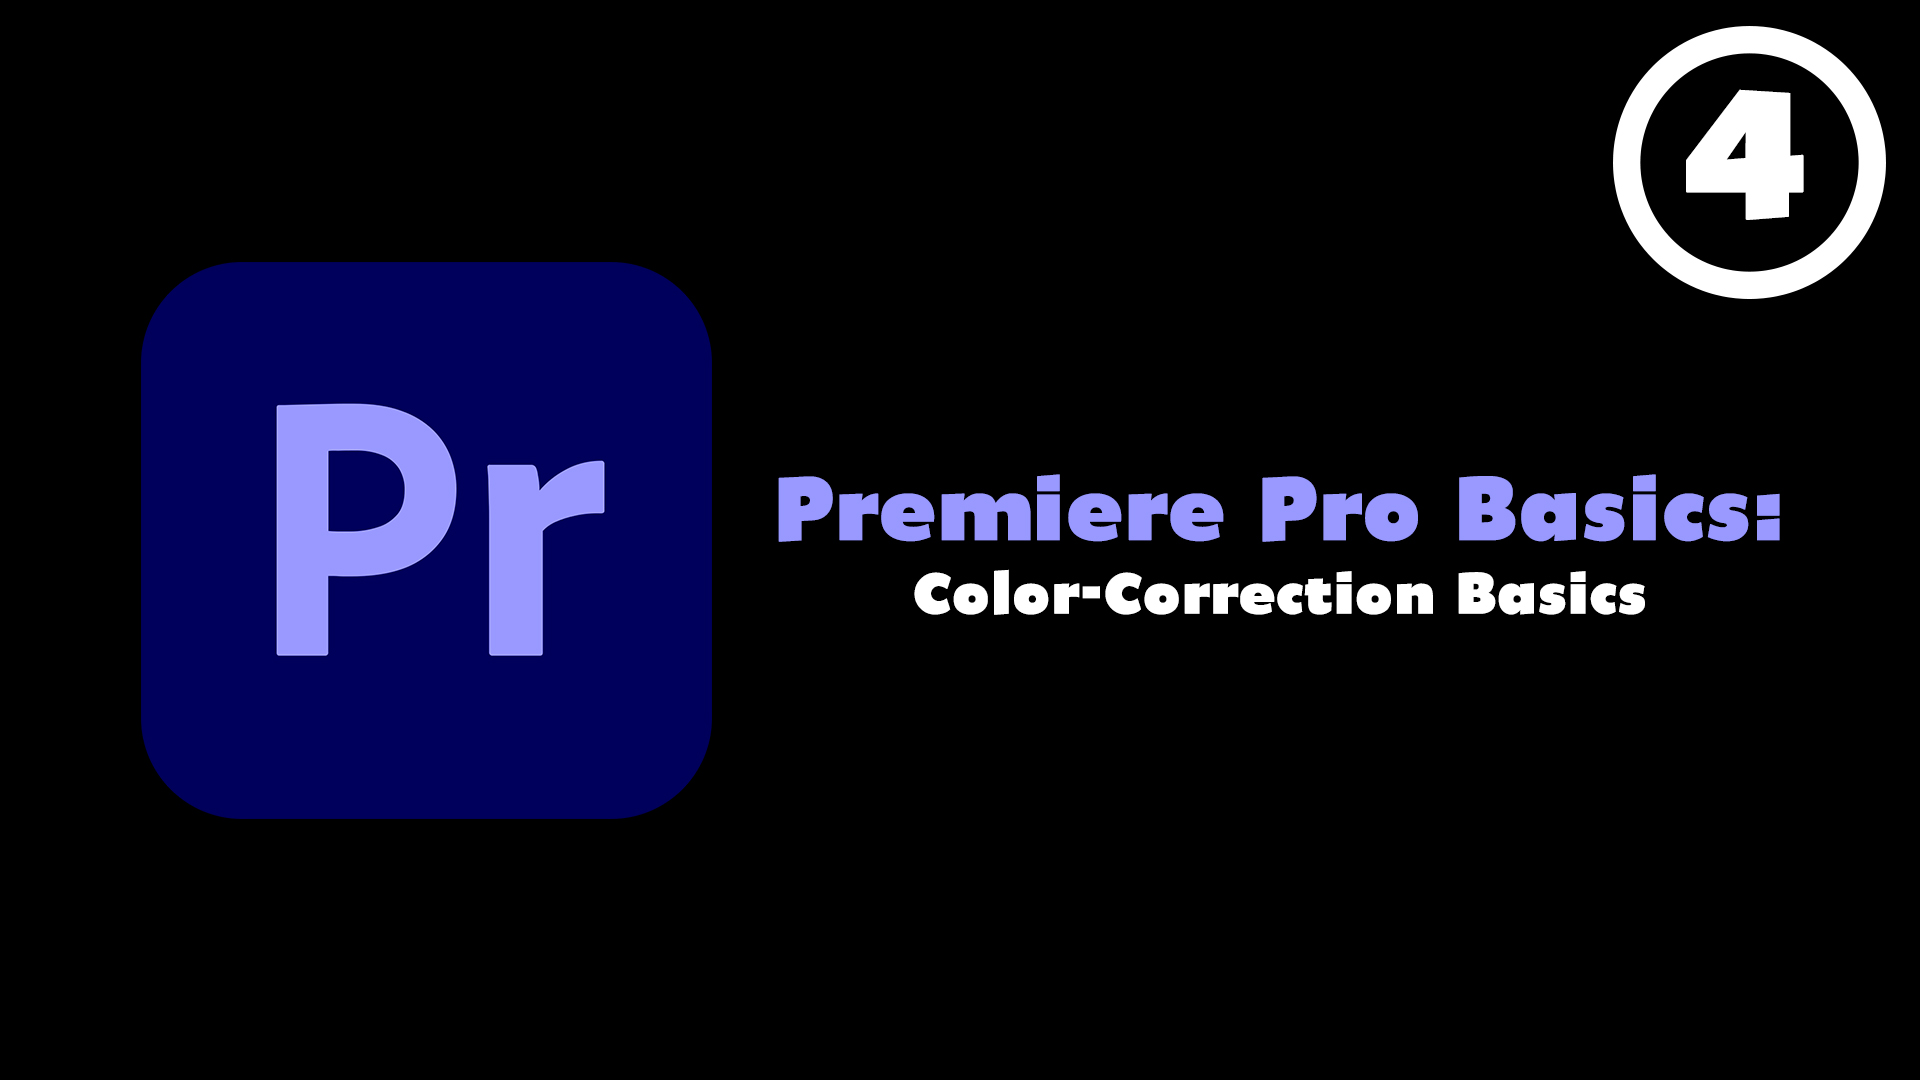 Premiere Pro Basics Course (Episode 4) - Color-Correction Basics